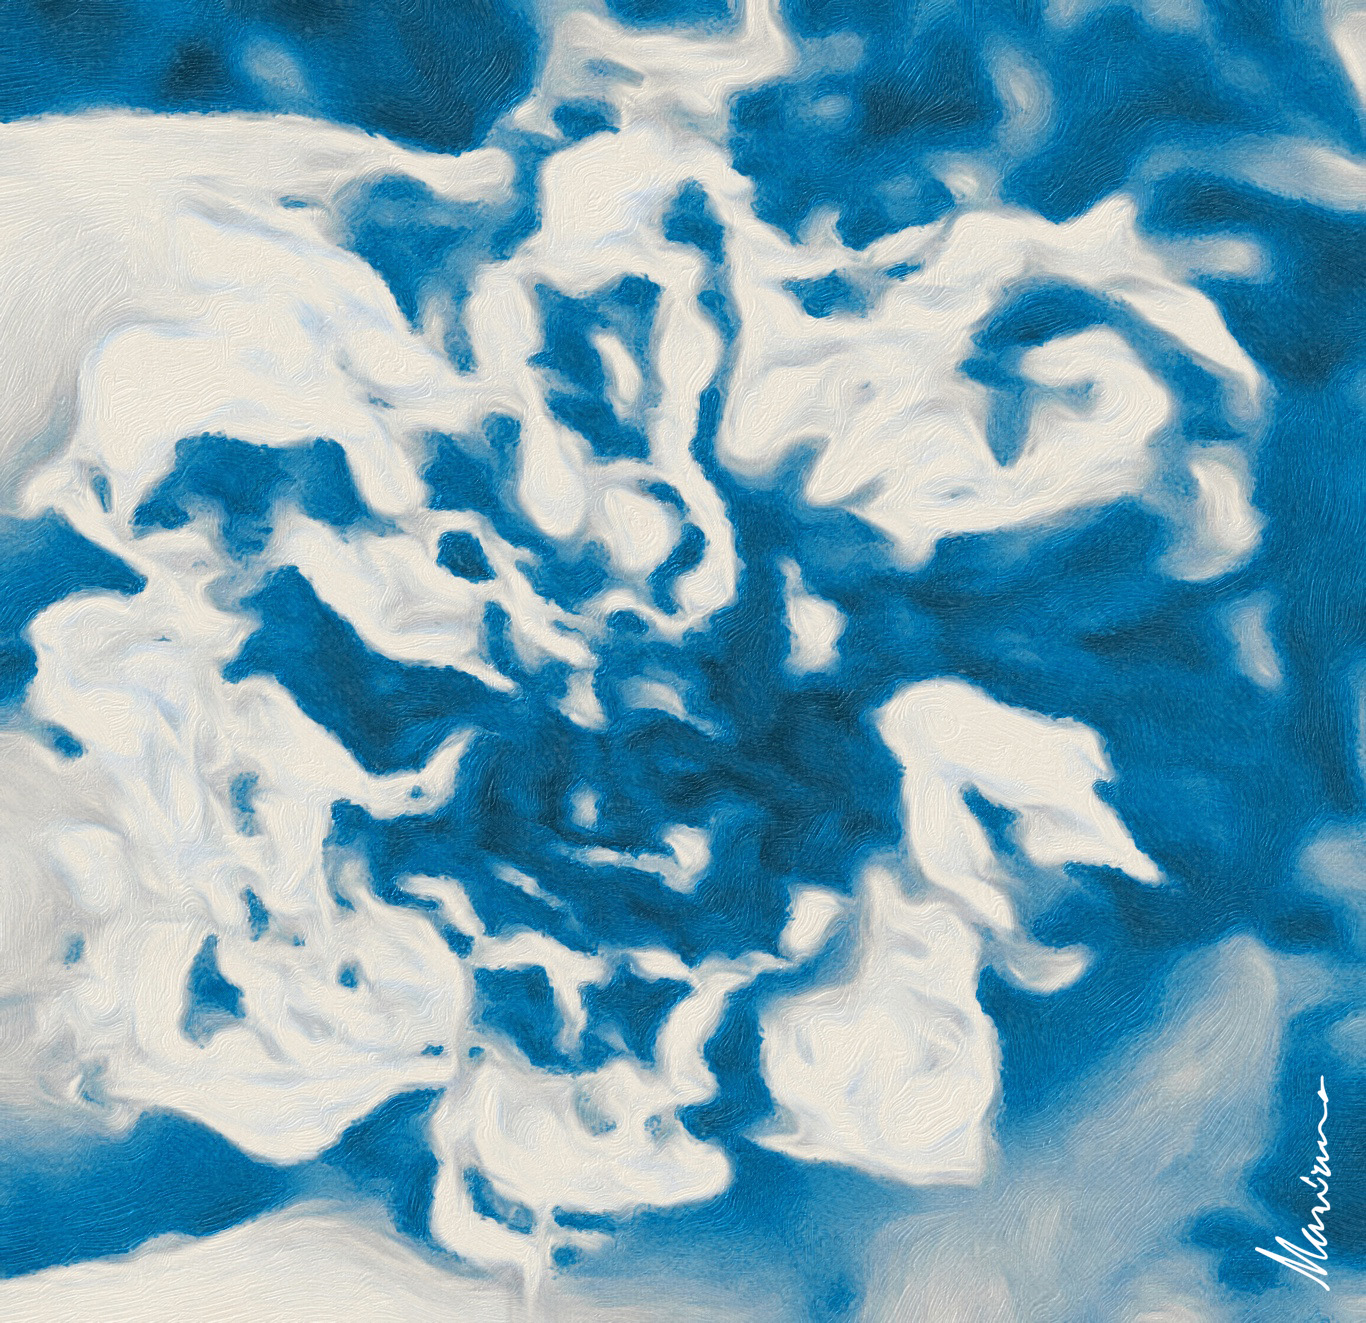 יצירת אמנות מאת מריאנה סיסון. היא יצירה אקספרסיוניסטית מופשטת עם נושא מרכזי של פרח כחול, המשלב טכניקות כגון ציור אקרילי, מברשת והדפסה דיגיטלית יש ביצירת האמנות אלמנט רעיוני, נושאים הקשורים לטבע ולקיימות . הקומפוזיציה של פרח מתפרץ יצירה דינמית ומרתקת ויזואלית המשלבת גישות מסורתיות ועכשוויות לציור.